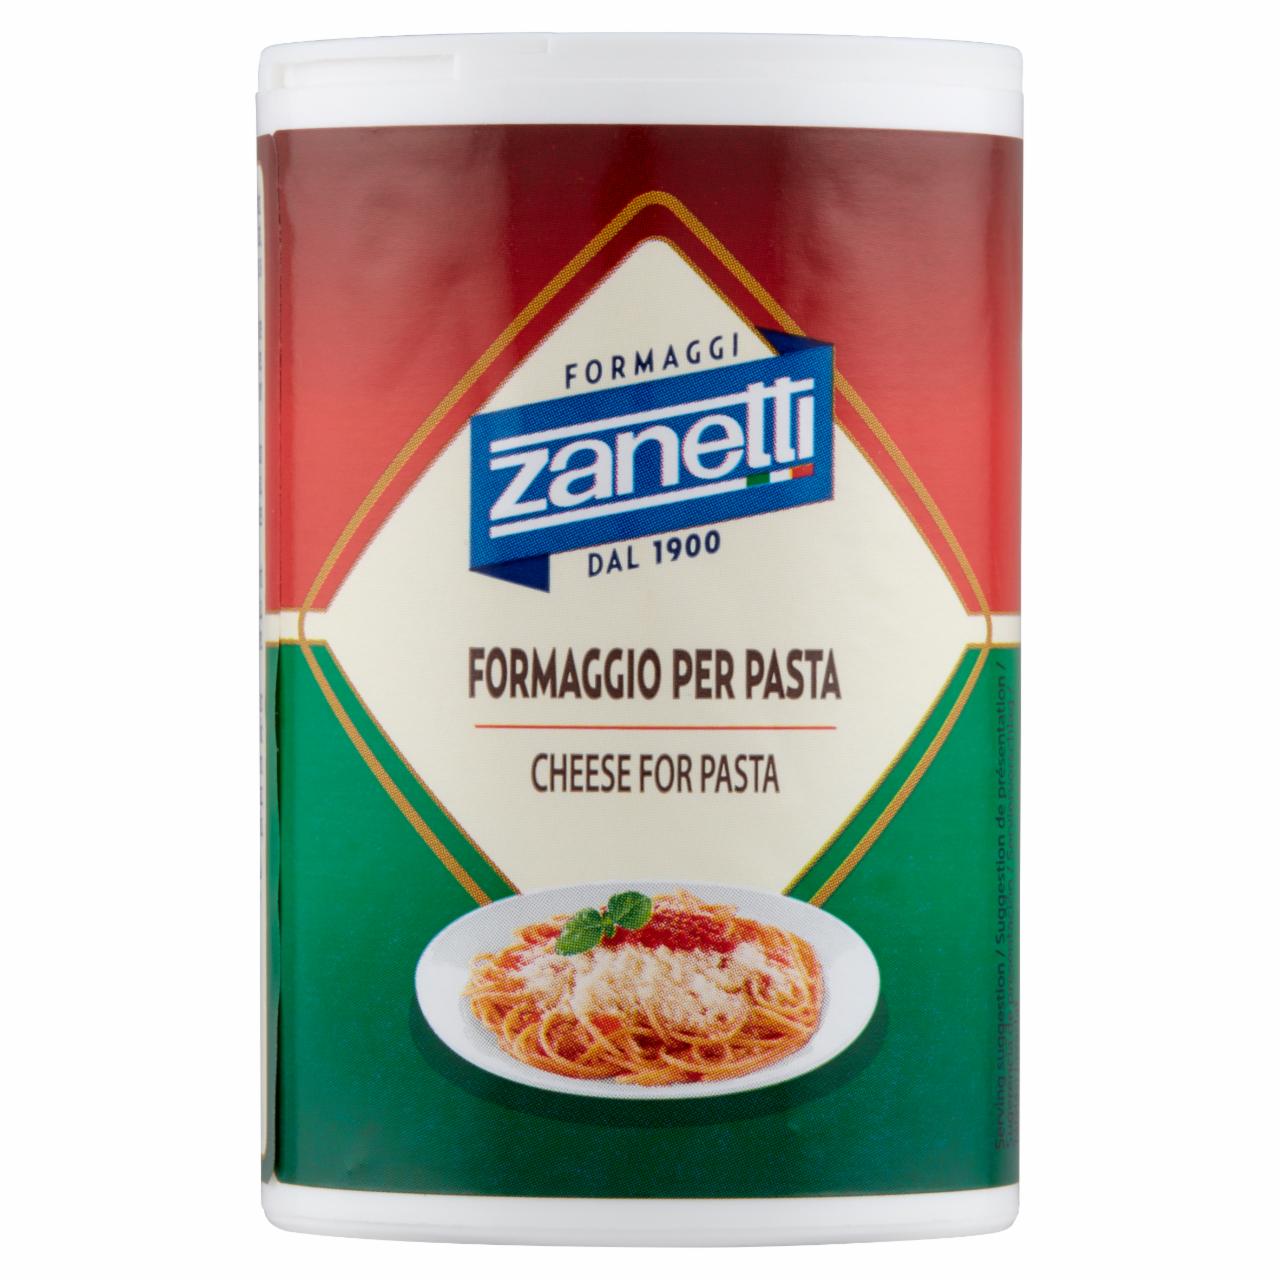 Képek - Zanetti reszelt szárított félzsíros kemény sajt 50 g